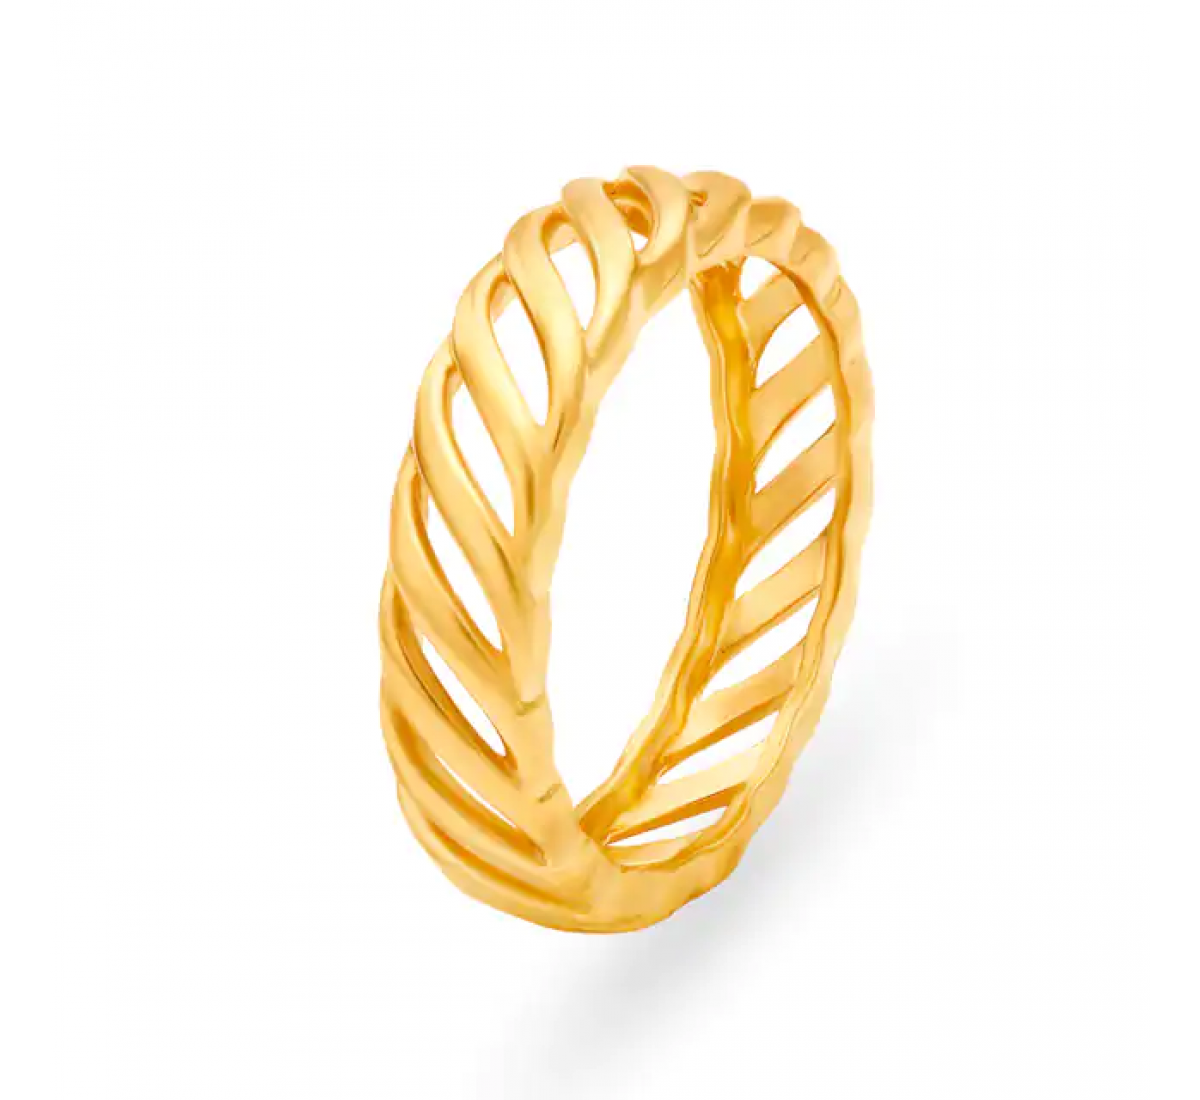 Stylish Elegant Gold Mesh Ring